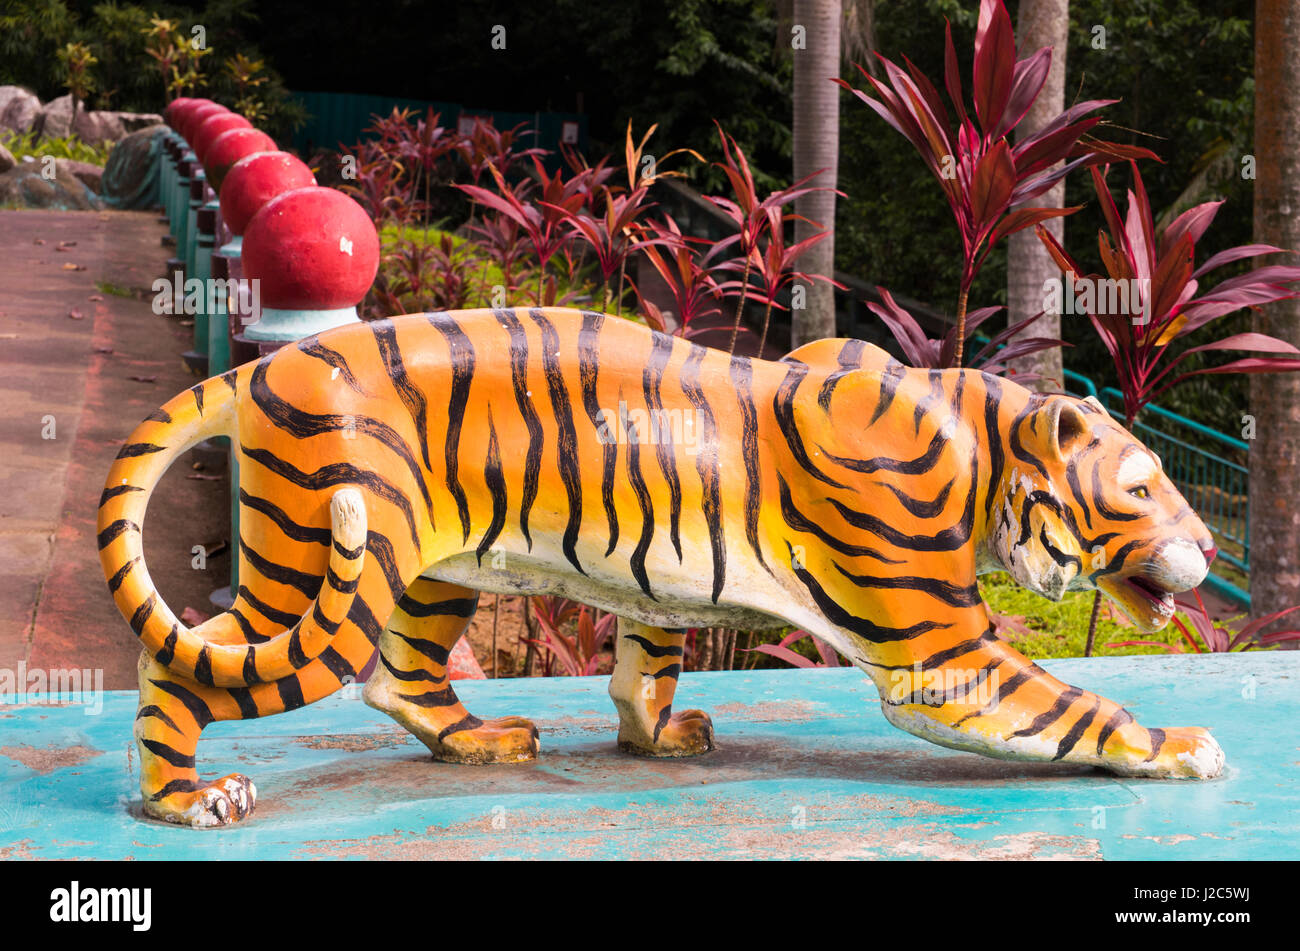 Singapore, Haw Par Villa, precedentemente noto come Tiger Balm Gardens, cinese-themed la statua di Tiger Foto Stock